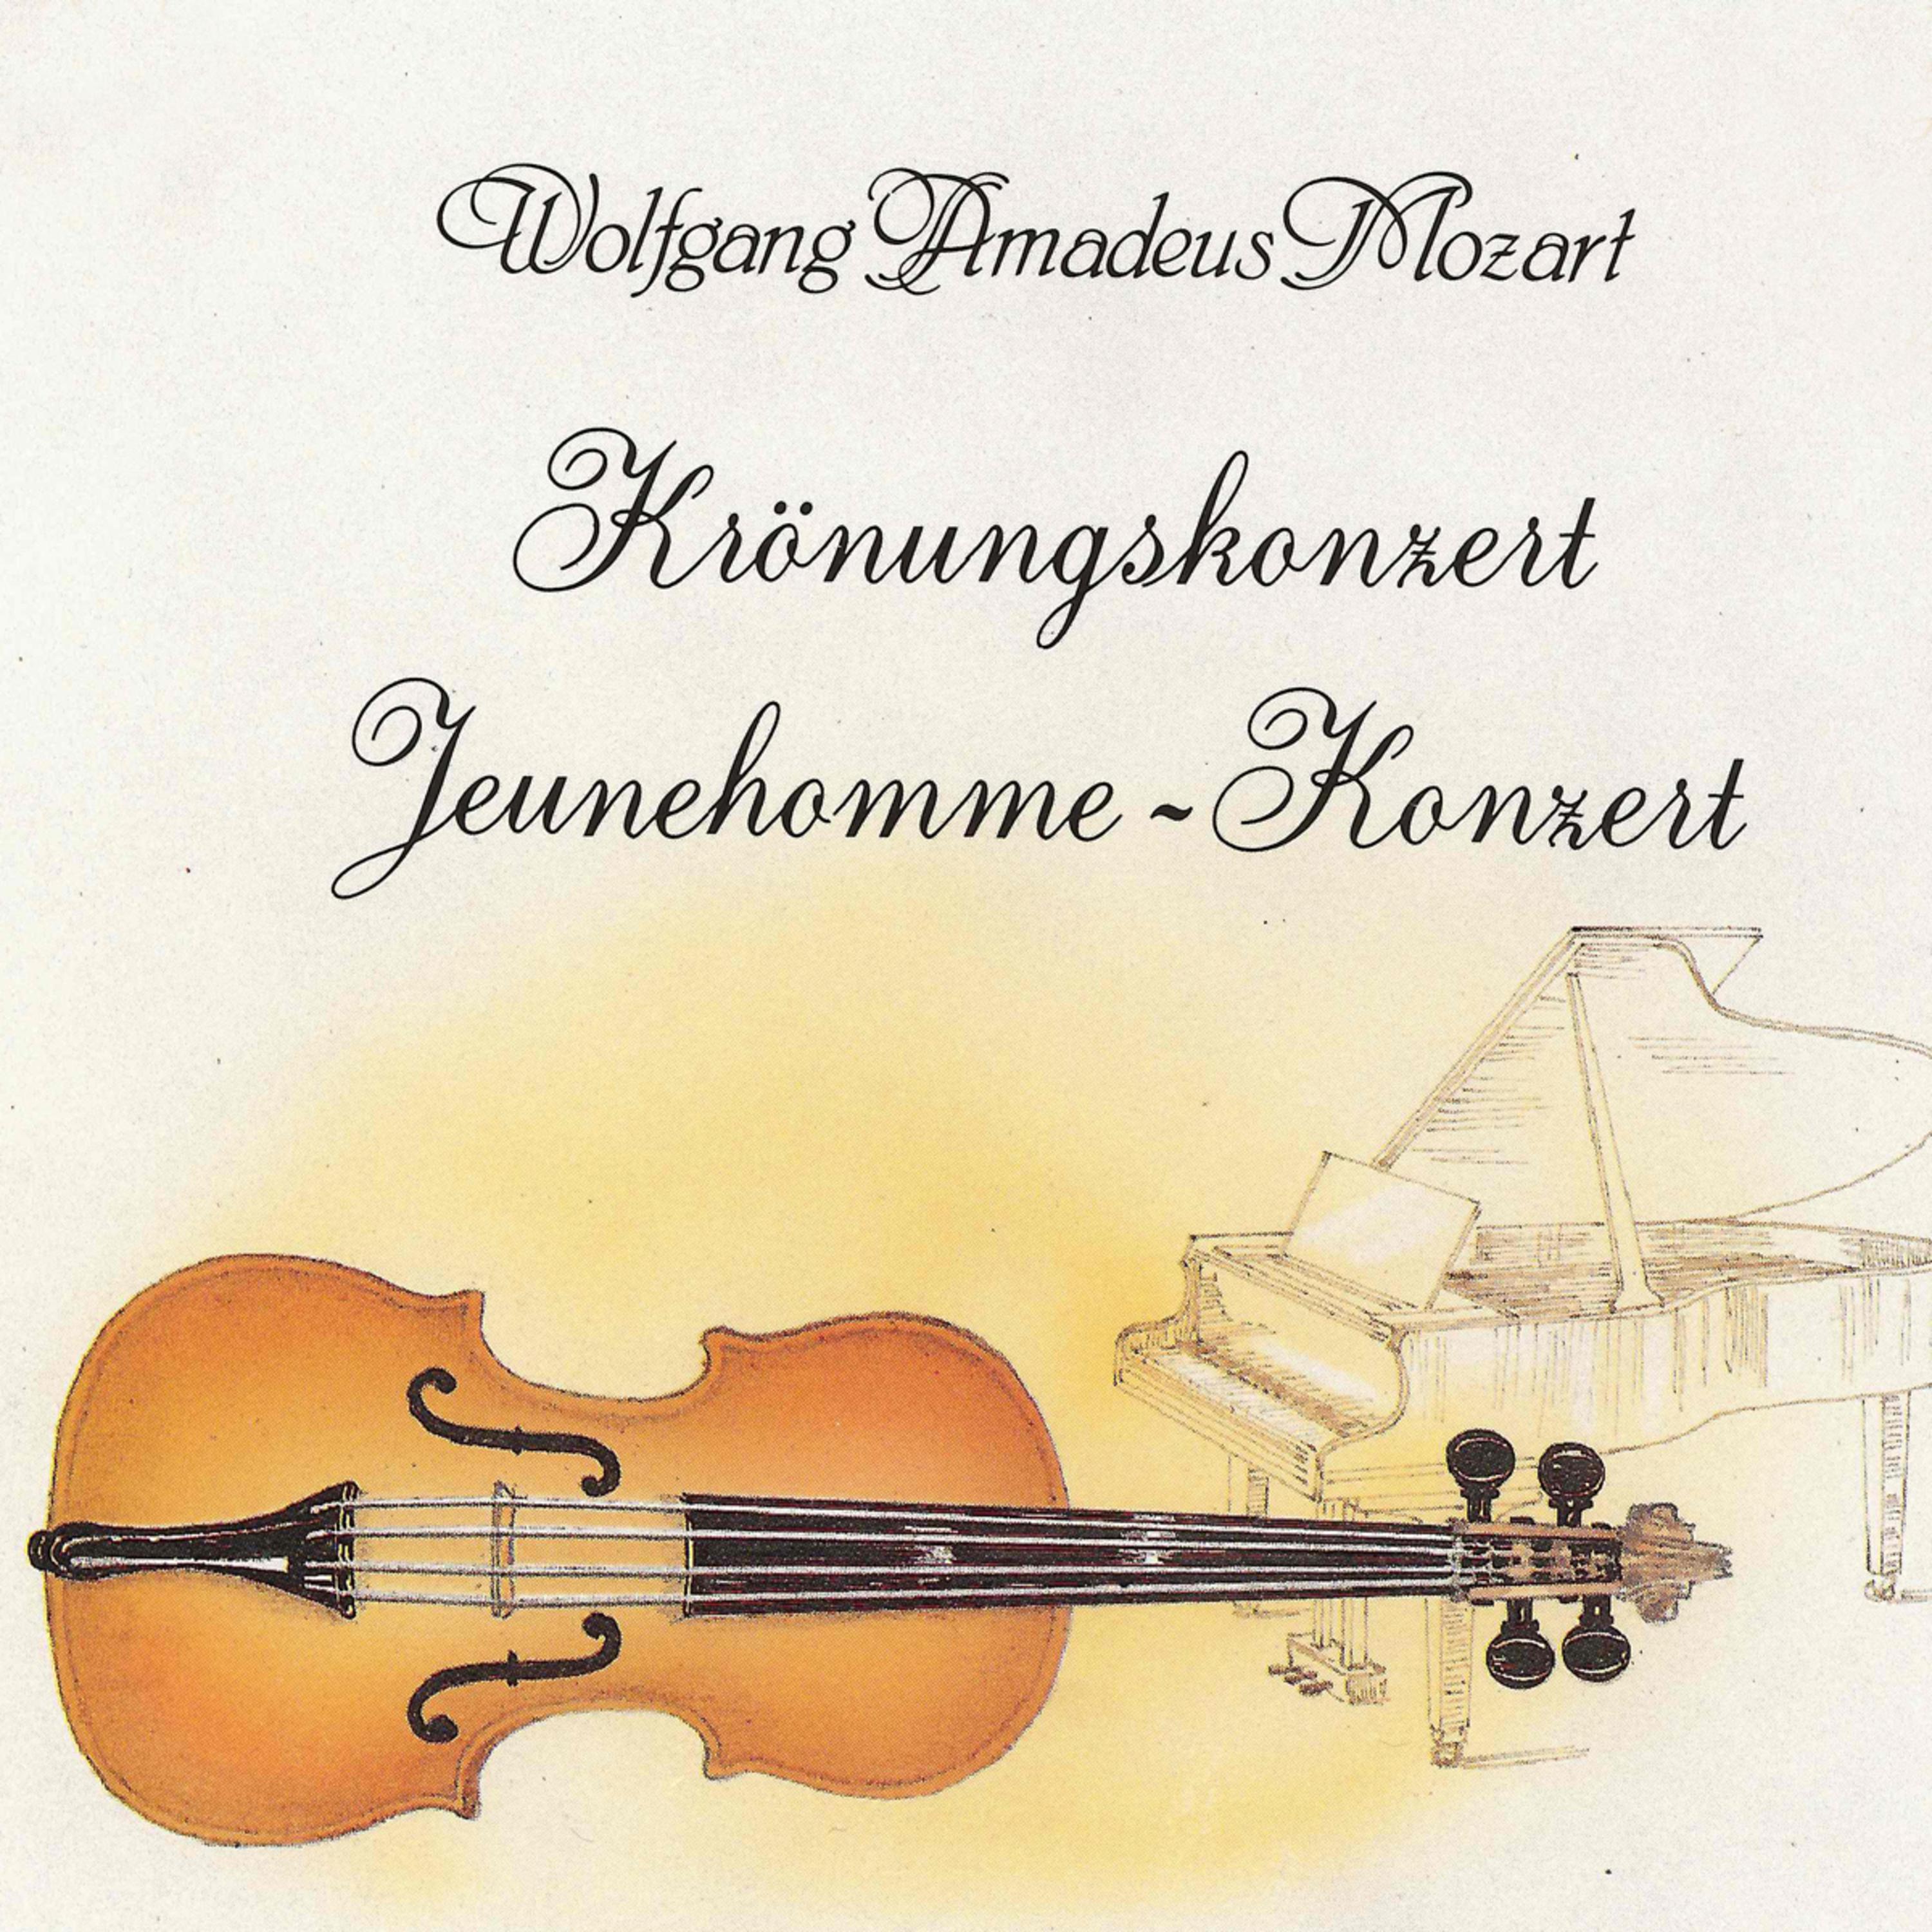 Wolfgang Amadeus Mozart: Kr nungskonzert  JeunehommeKonzert